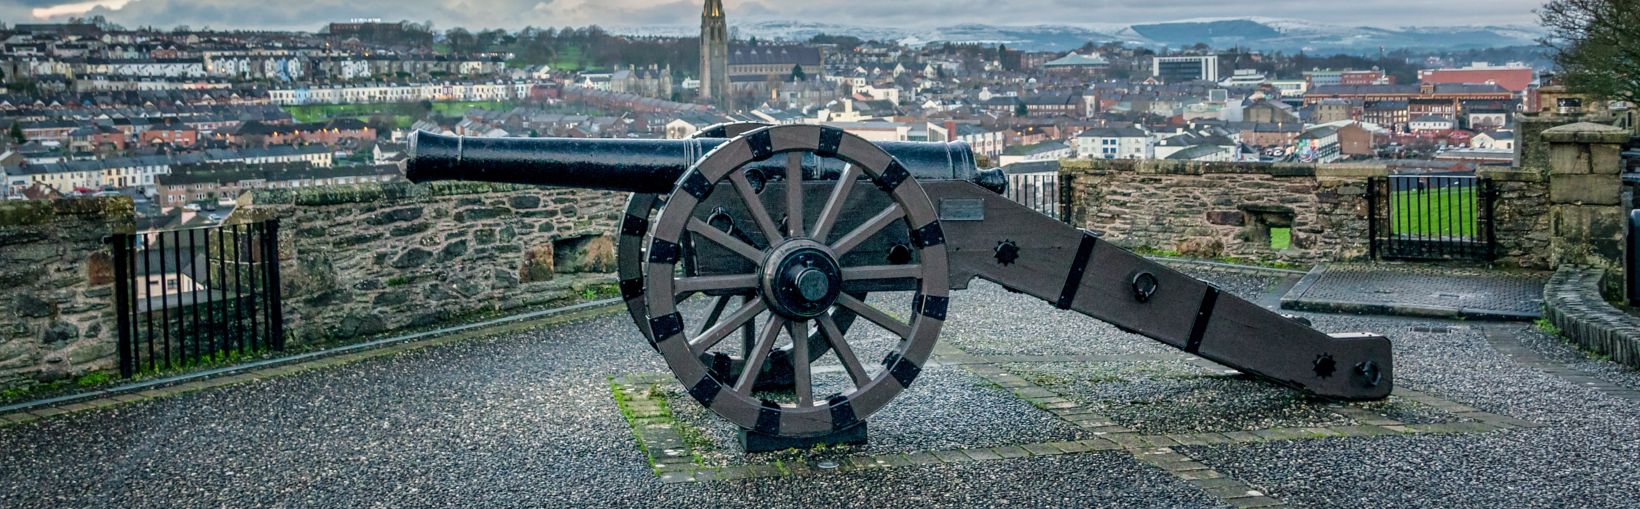 Dette er et billede af den gamle siegekanton på historiske Derry Walls i Nordirland